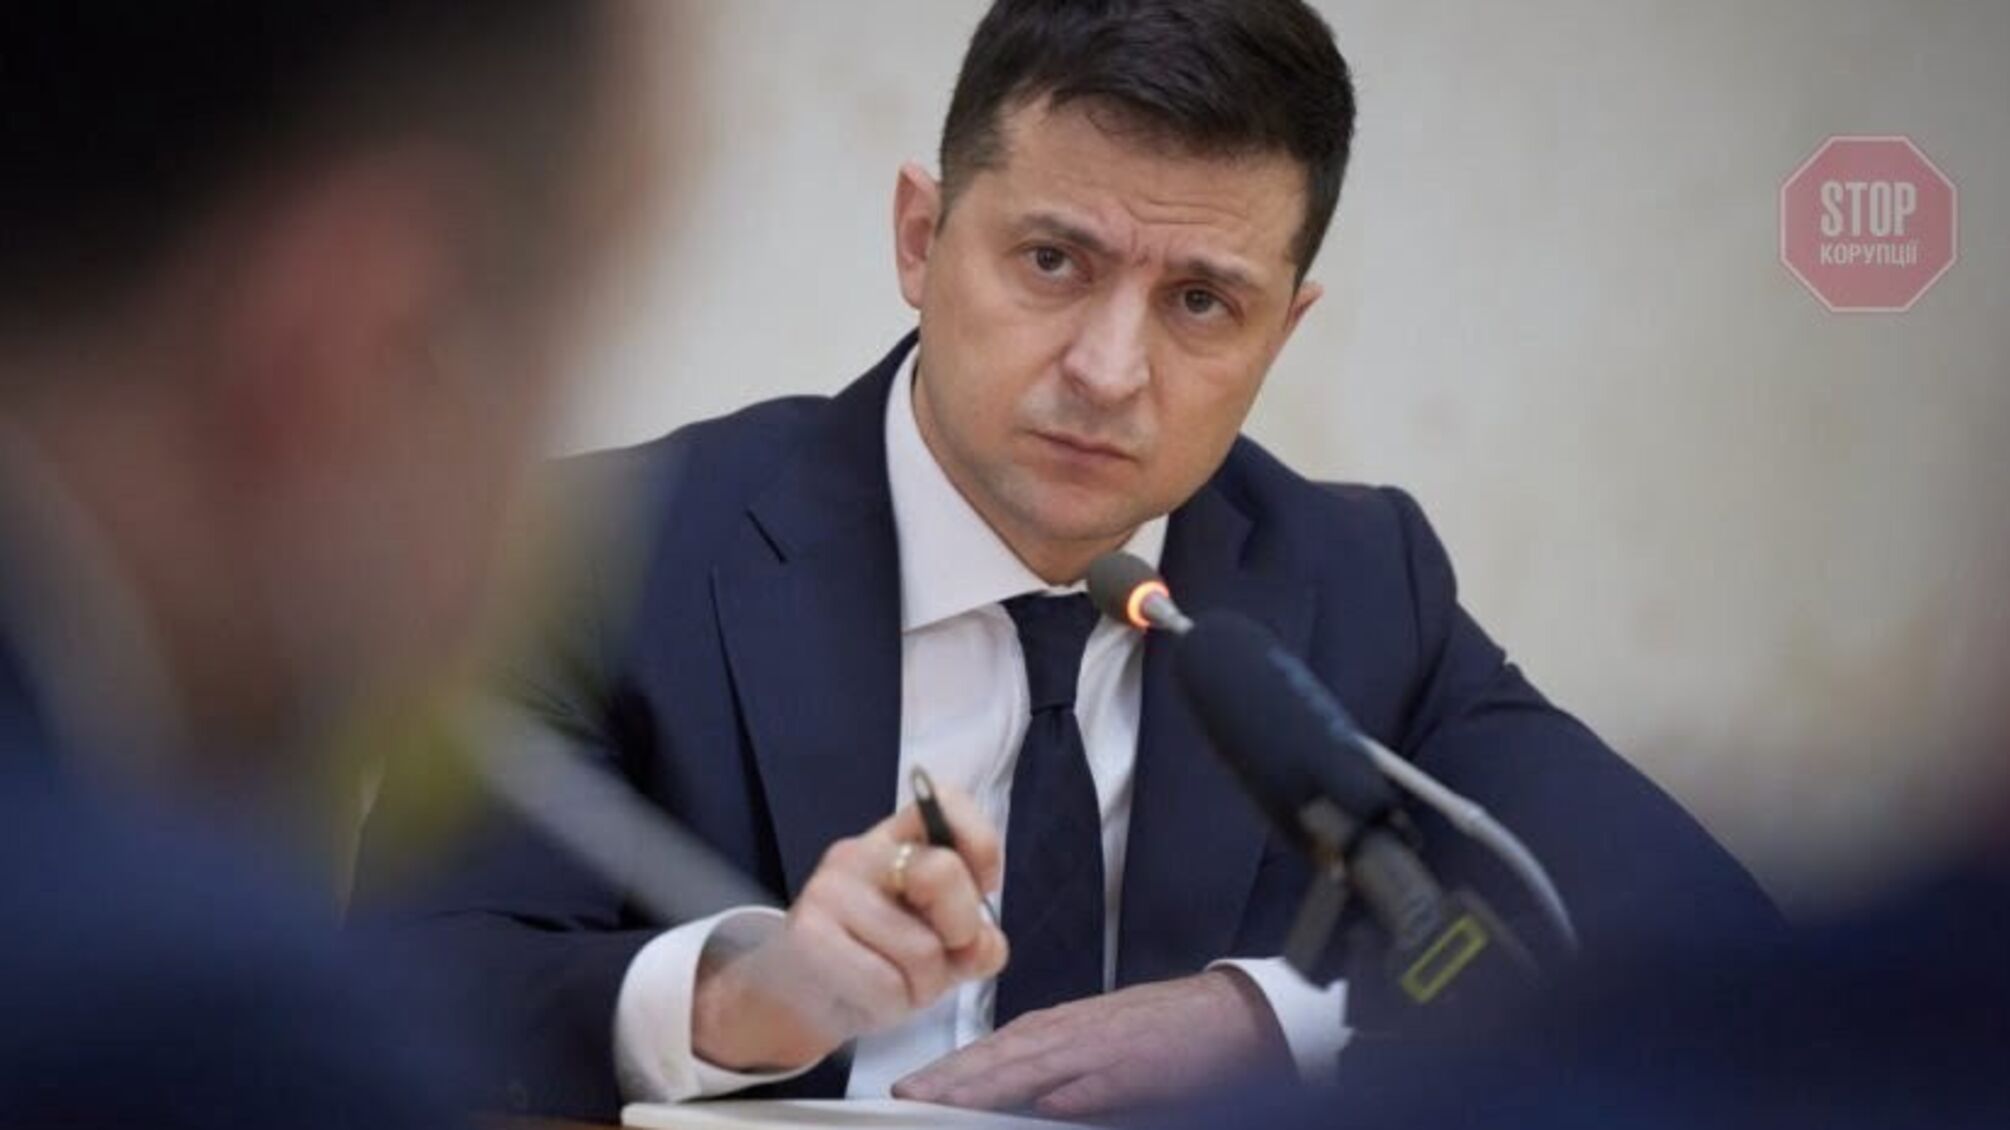 Посол ЕС в Украине Маасикас прокомментировал президентский законопроект «об олигархах»